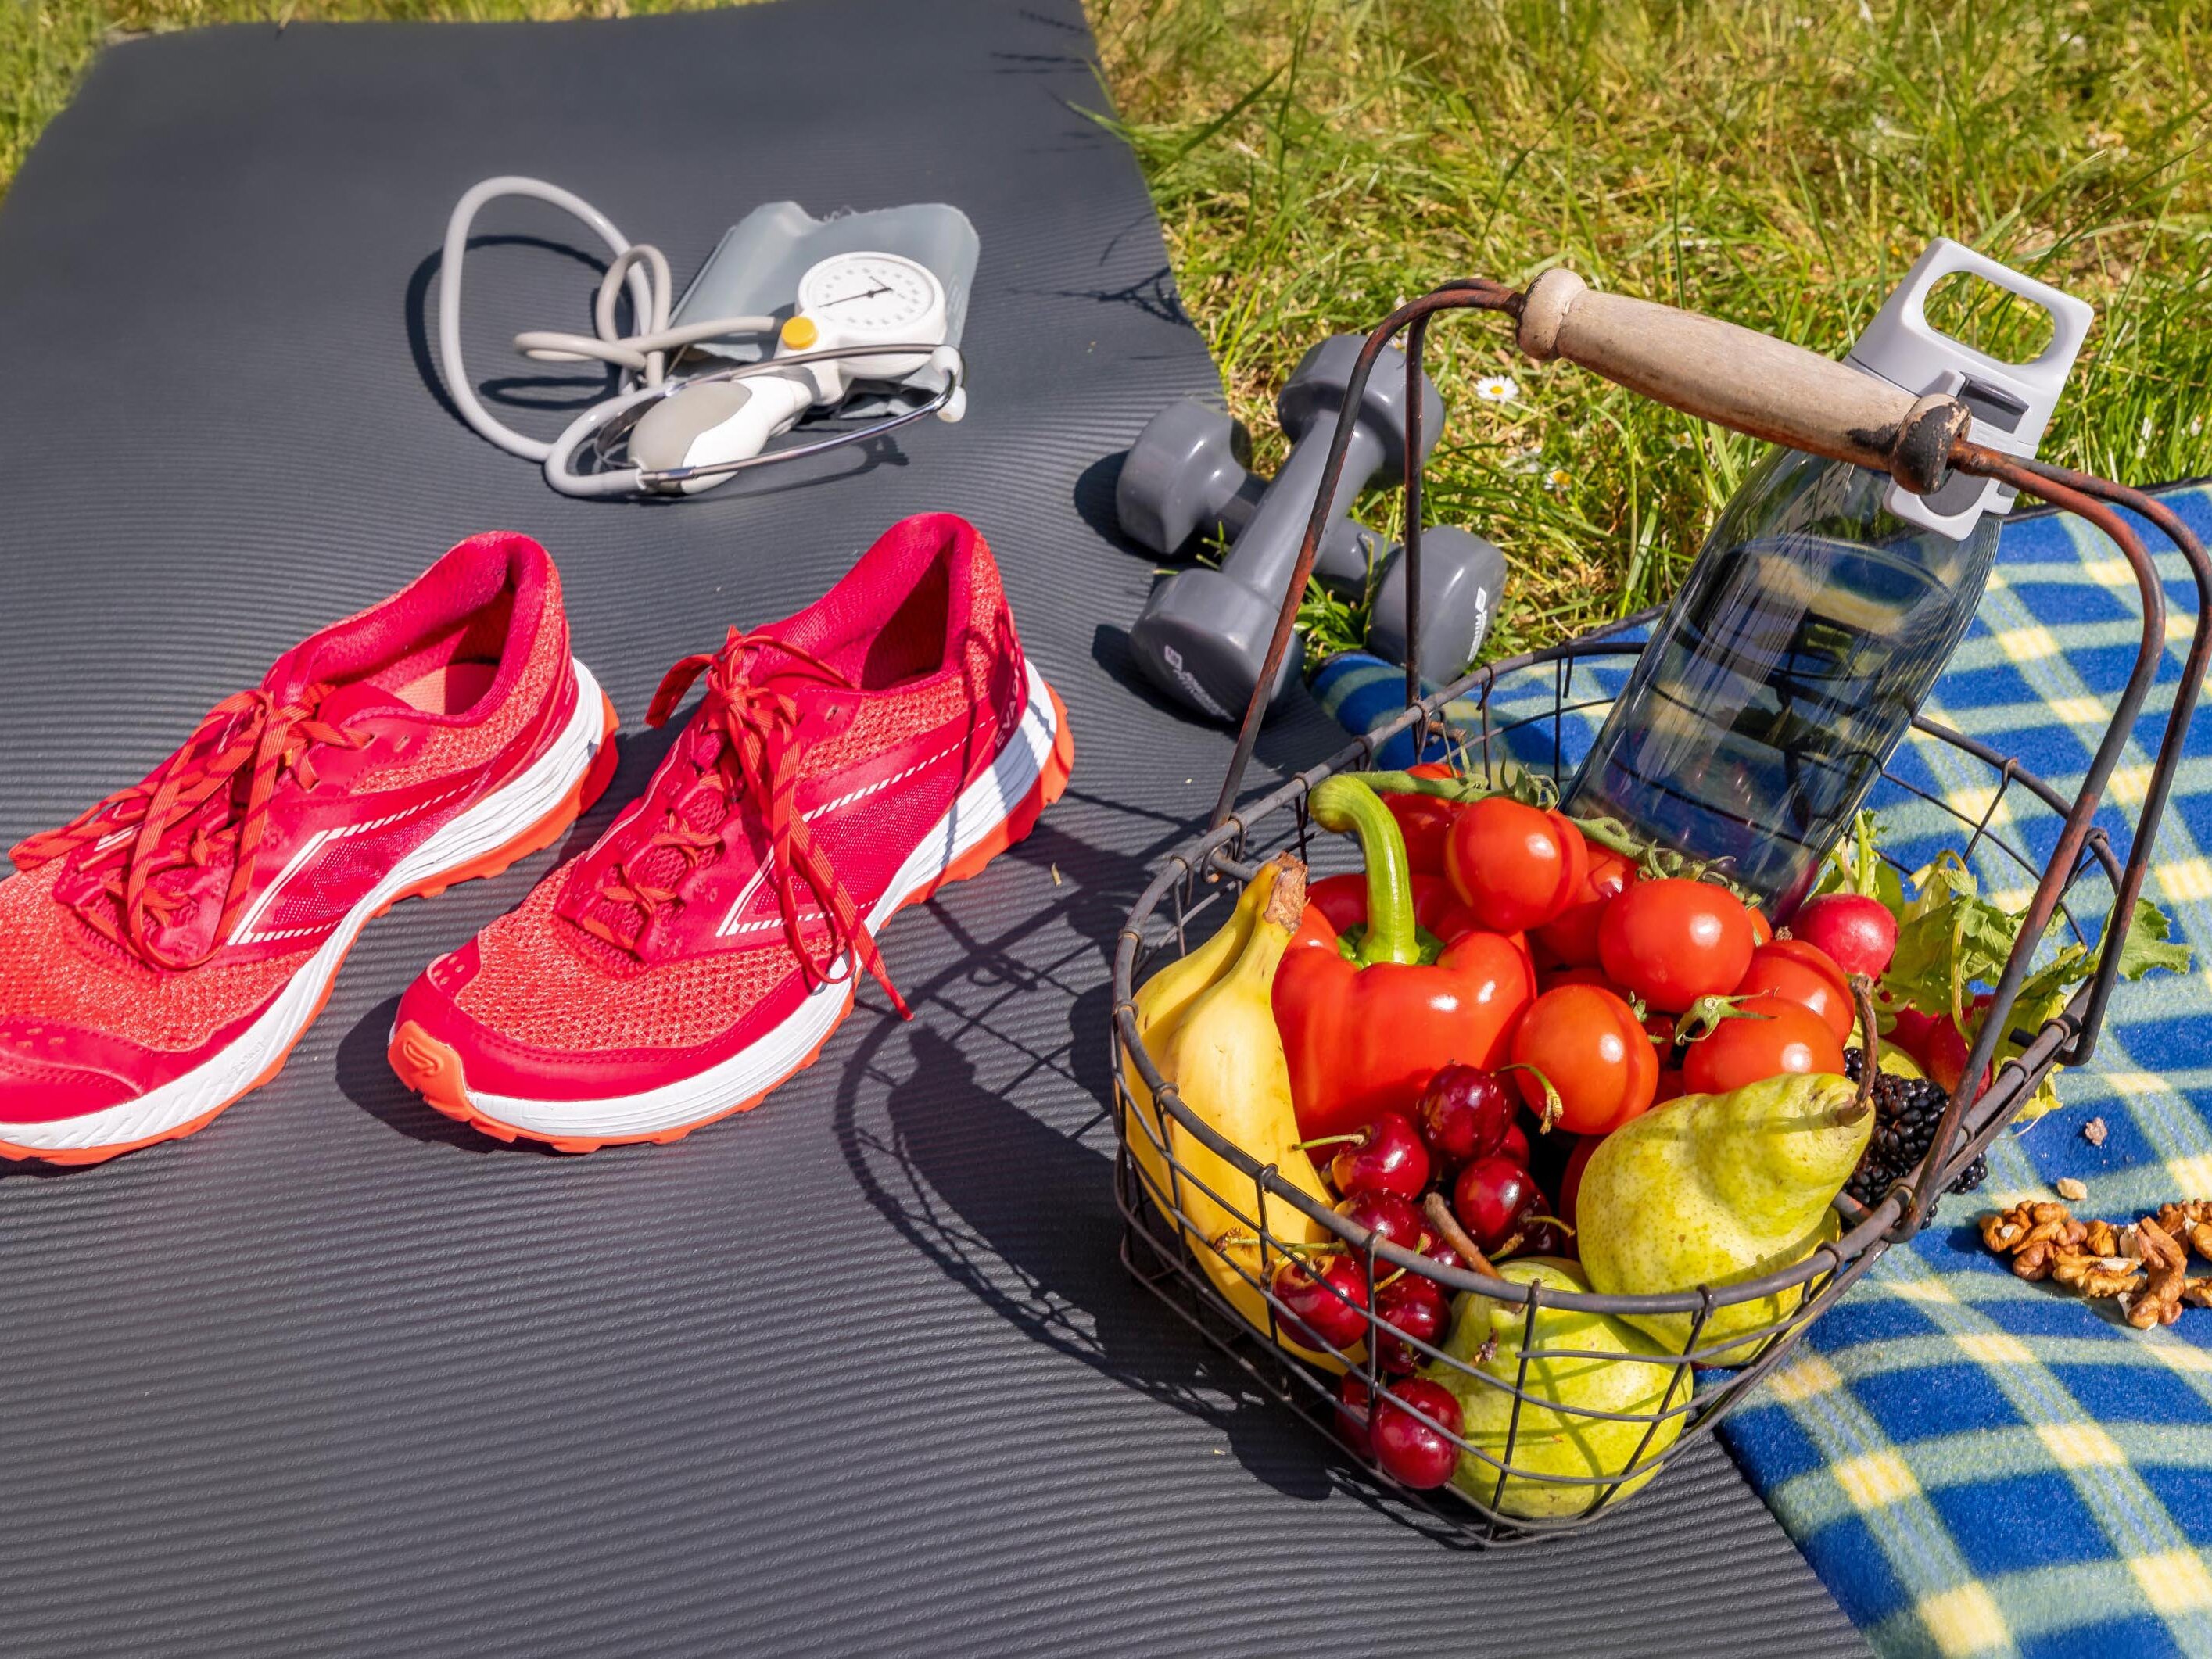 Yogamatte und Picknickdecke mit Laufschuhen, Stethoskop sowie Obst- und Gemüsekorb und Wasserflasche